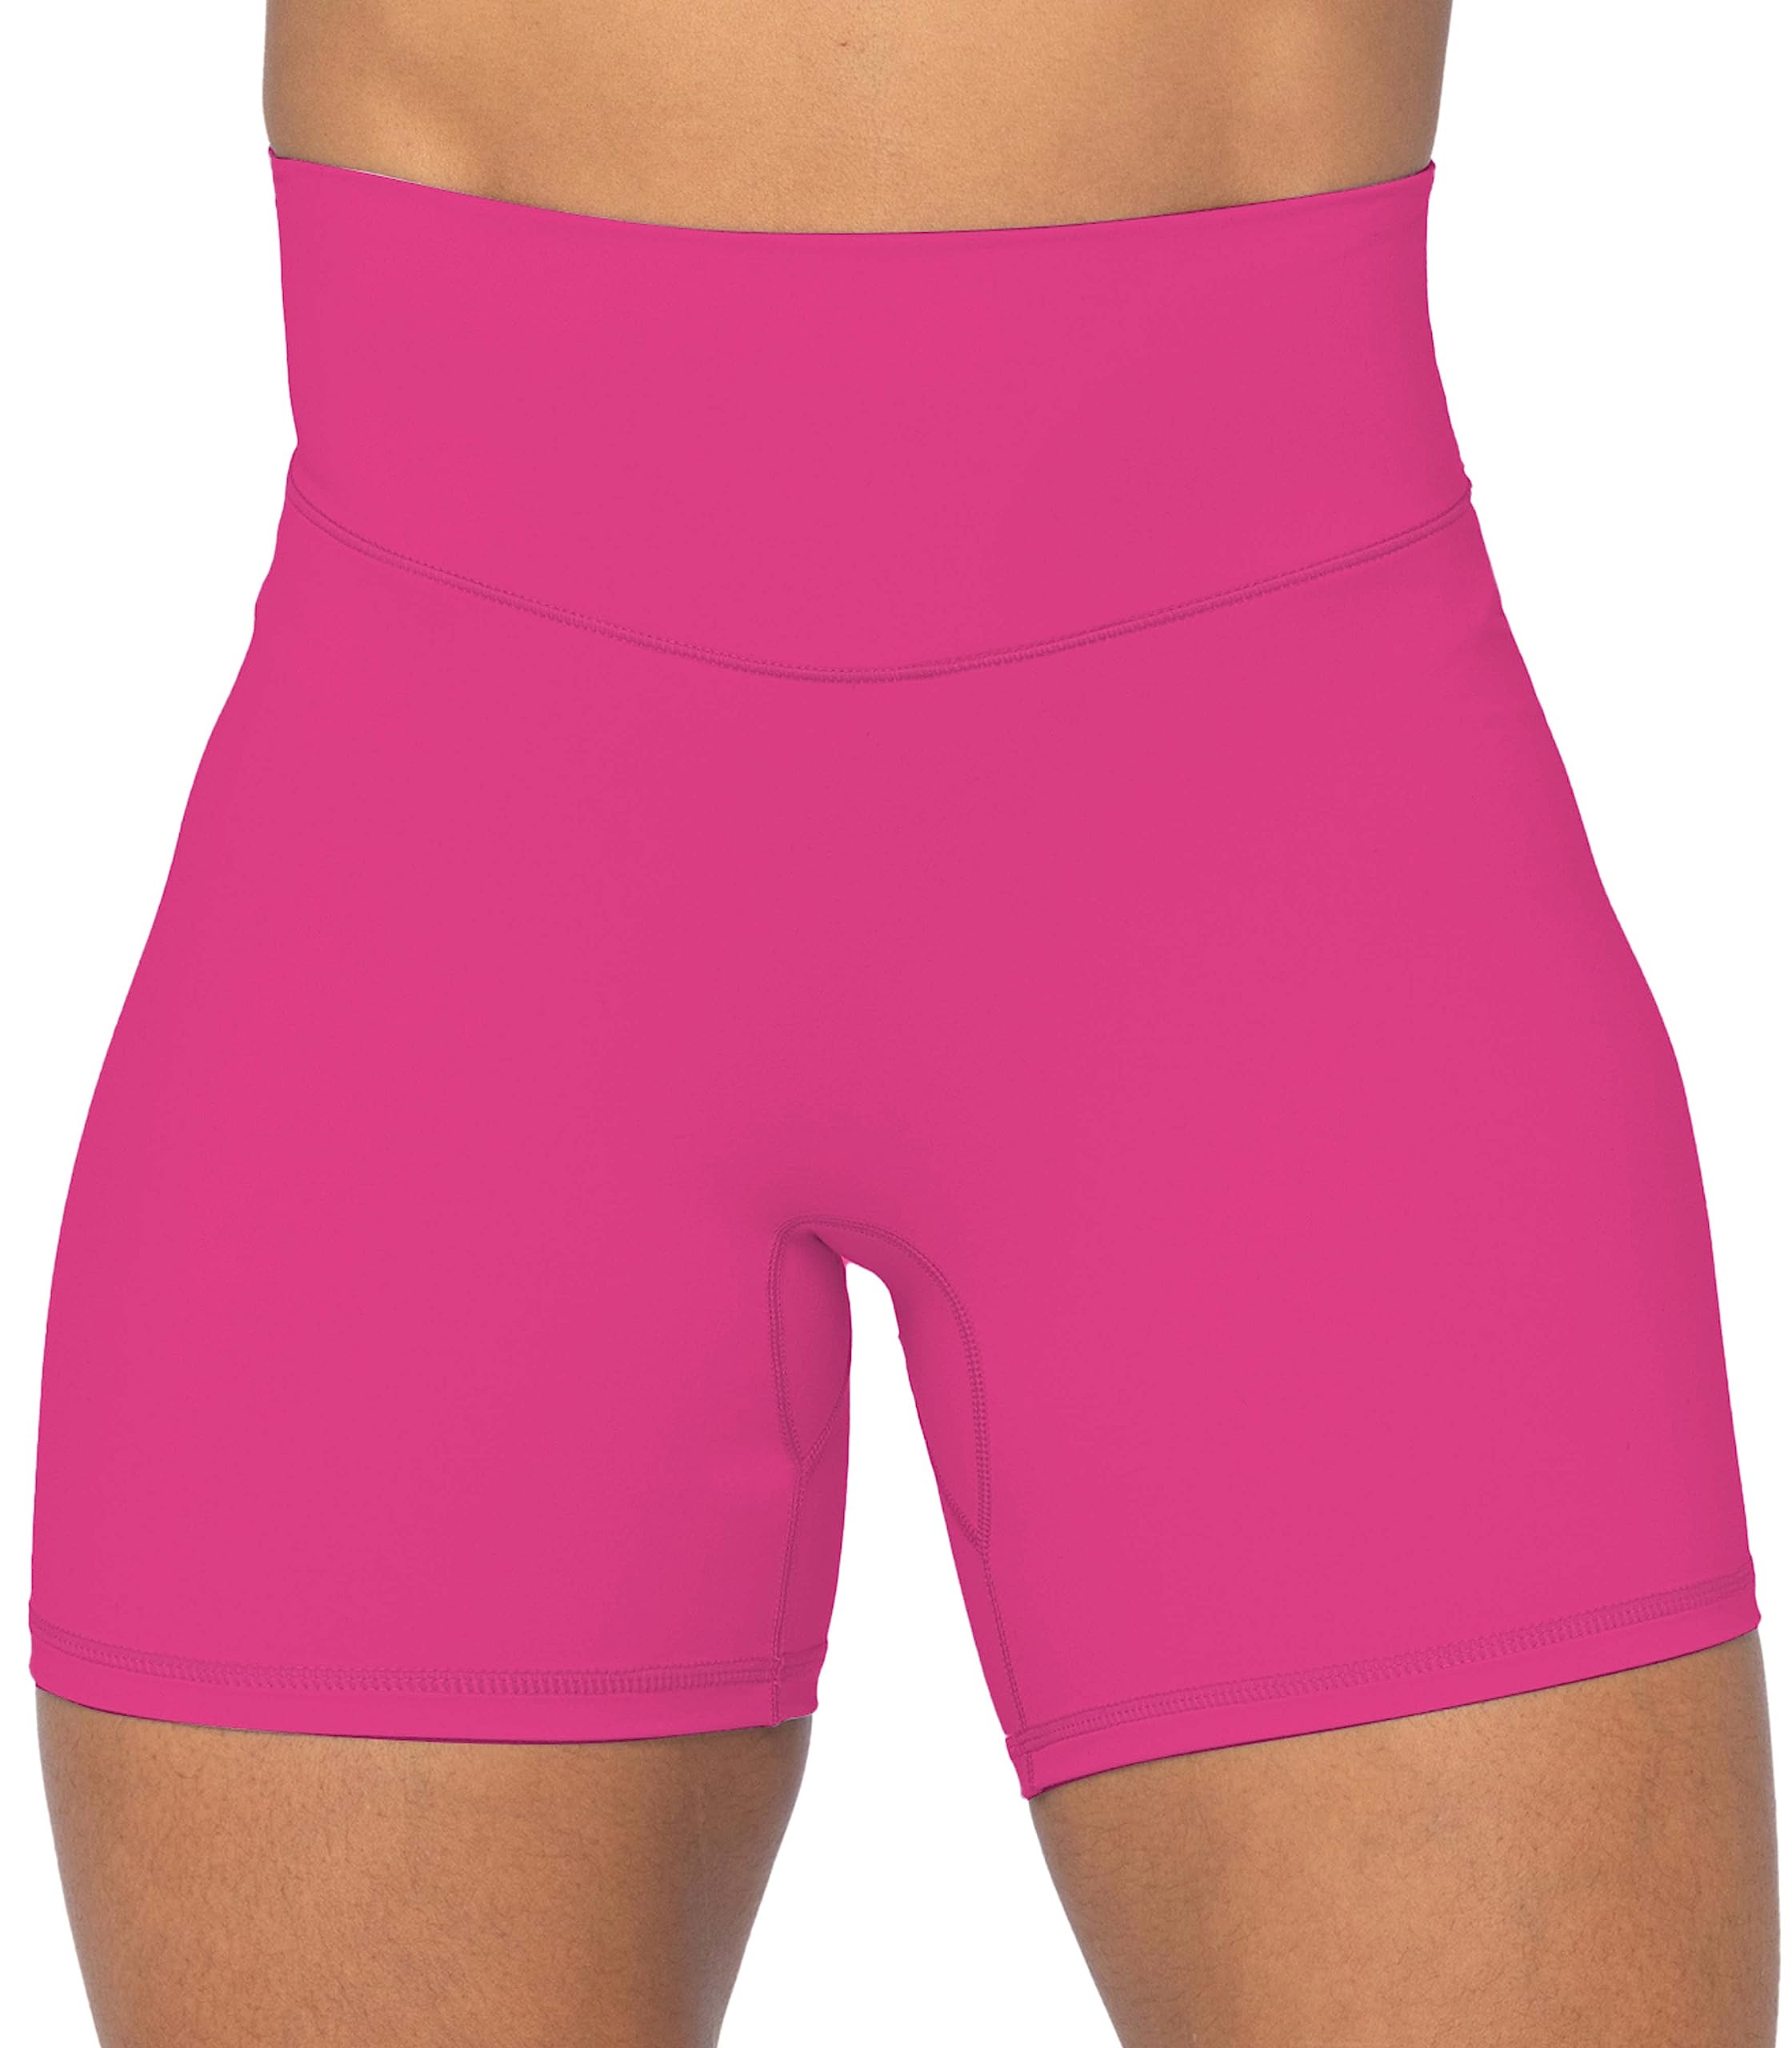 Sunzel No Front Seam High Waist Biker Shorts for Women Yoga